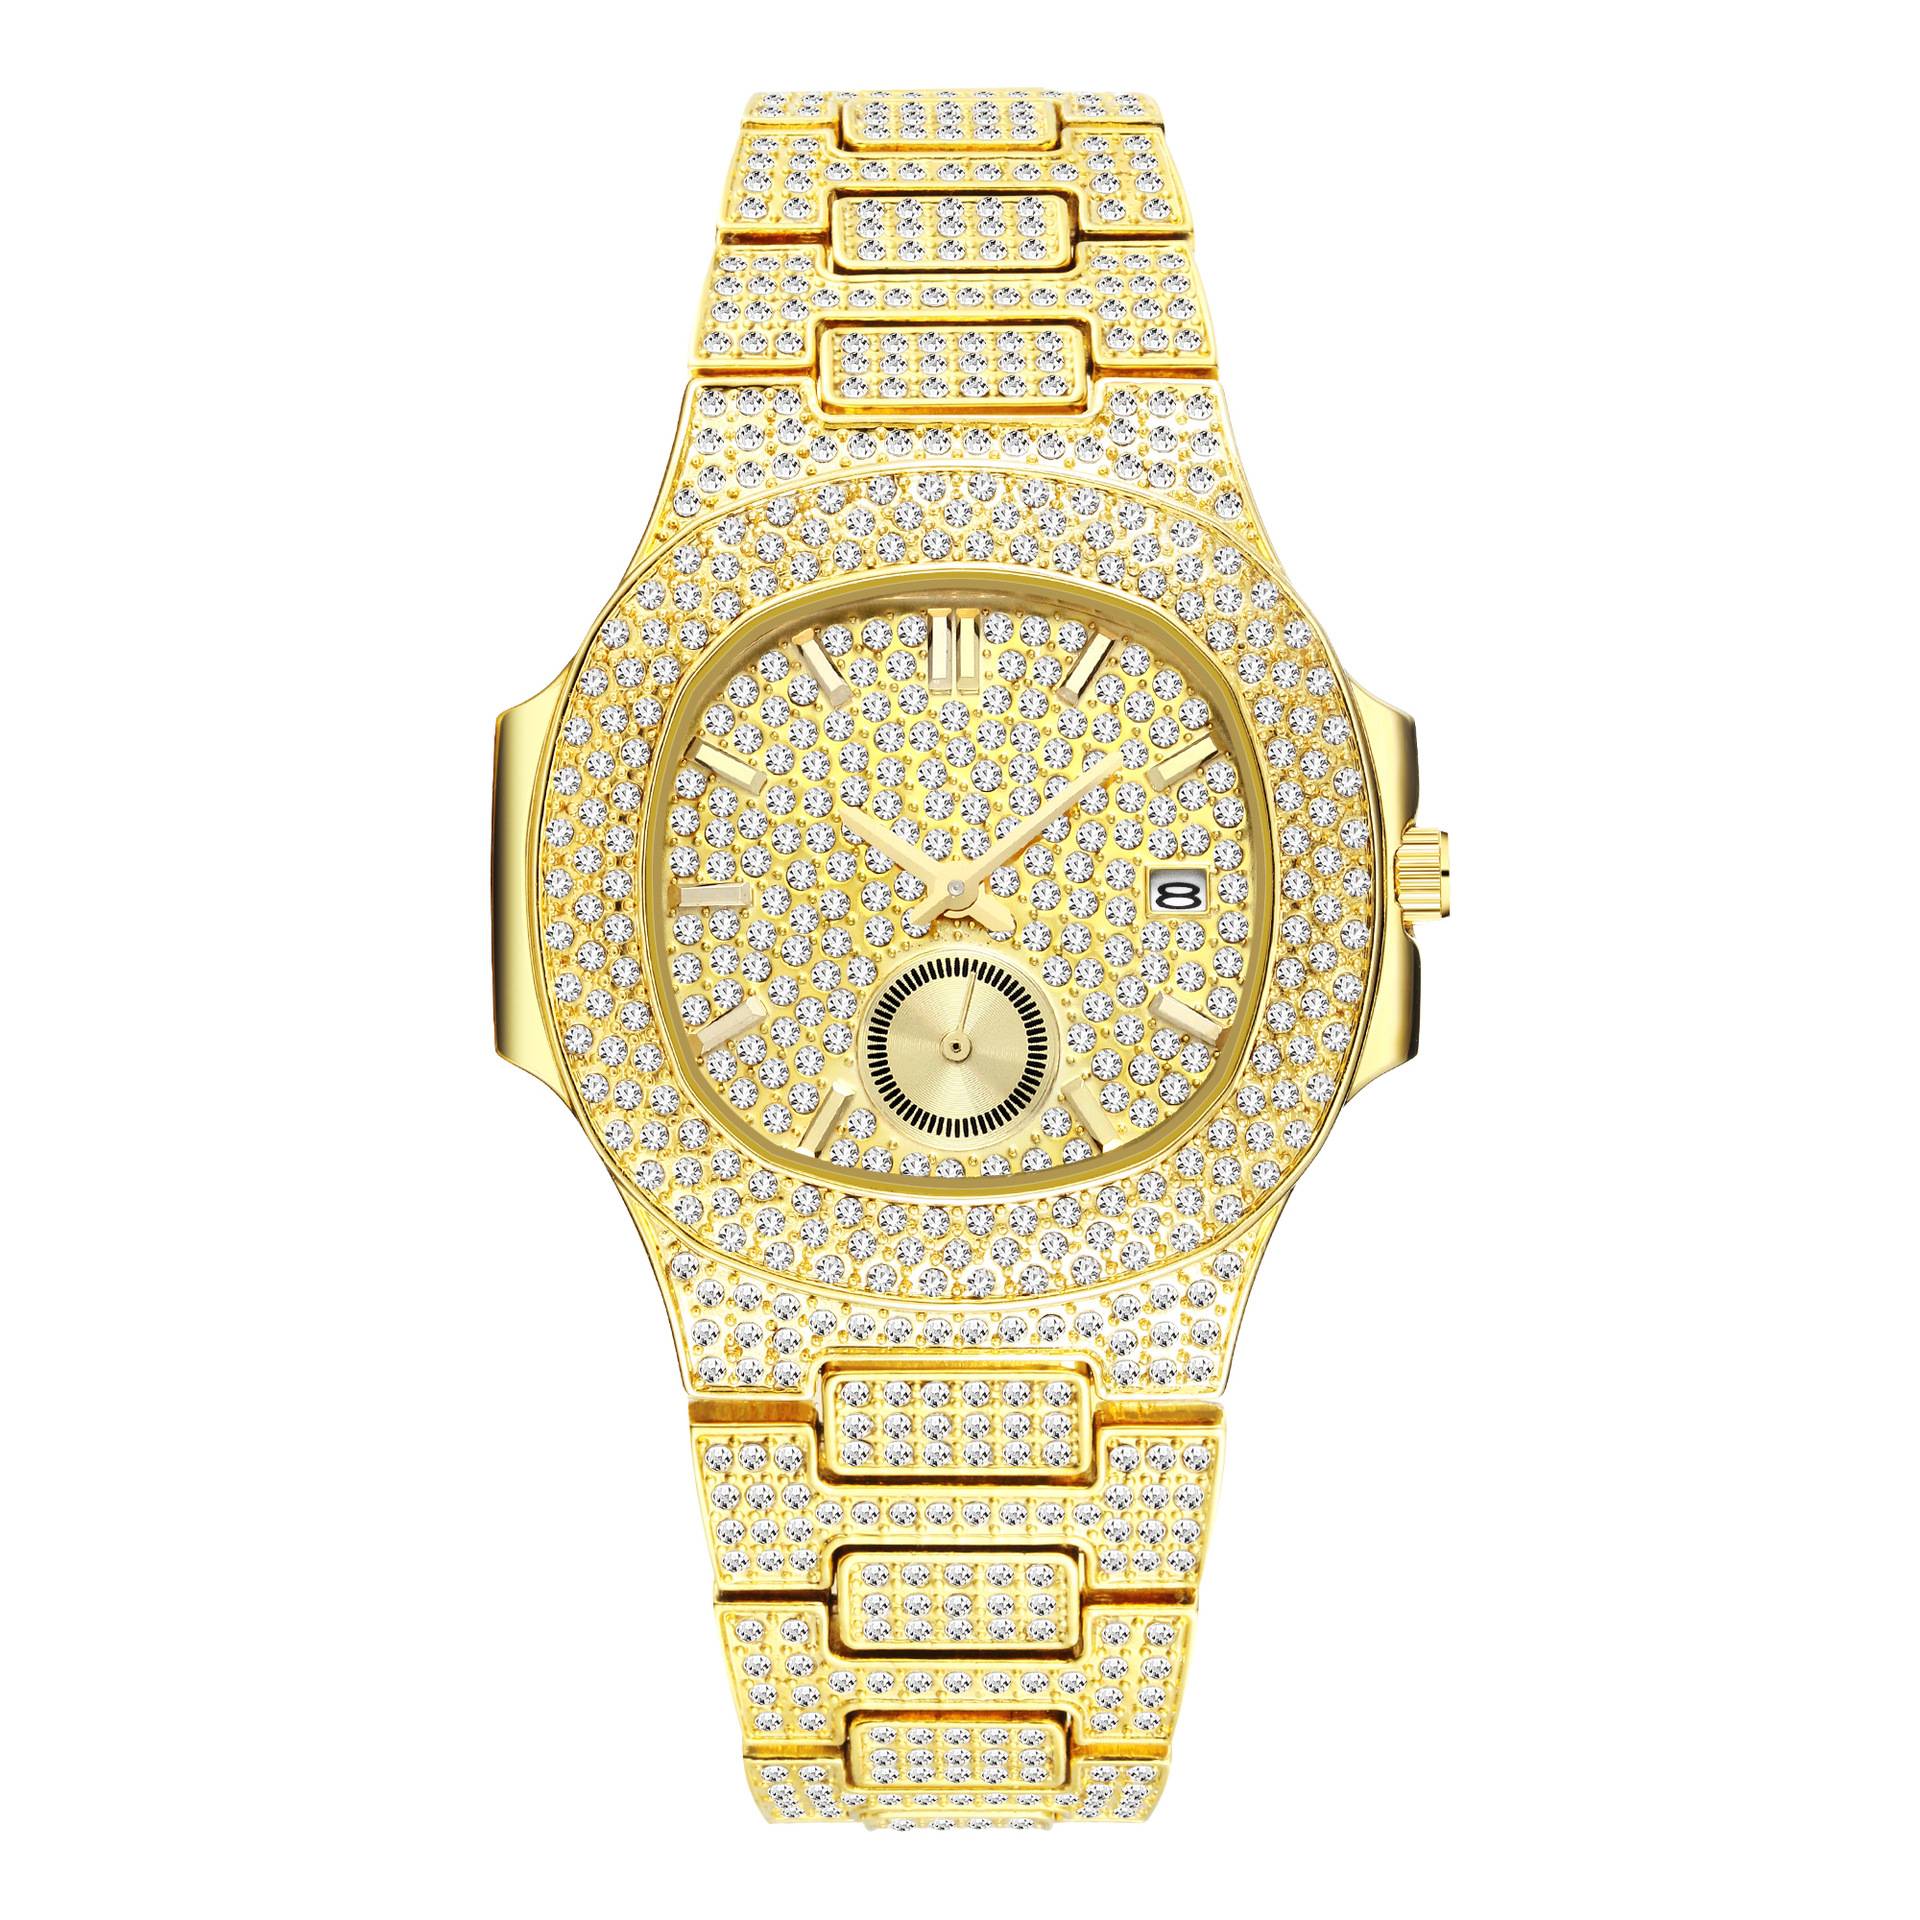 新时装男士手表石英手表多功能钻石镶嵌表手表不锈钢防水手表